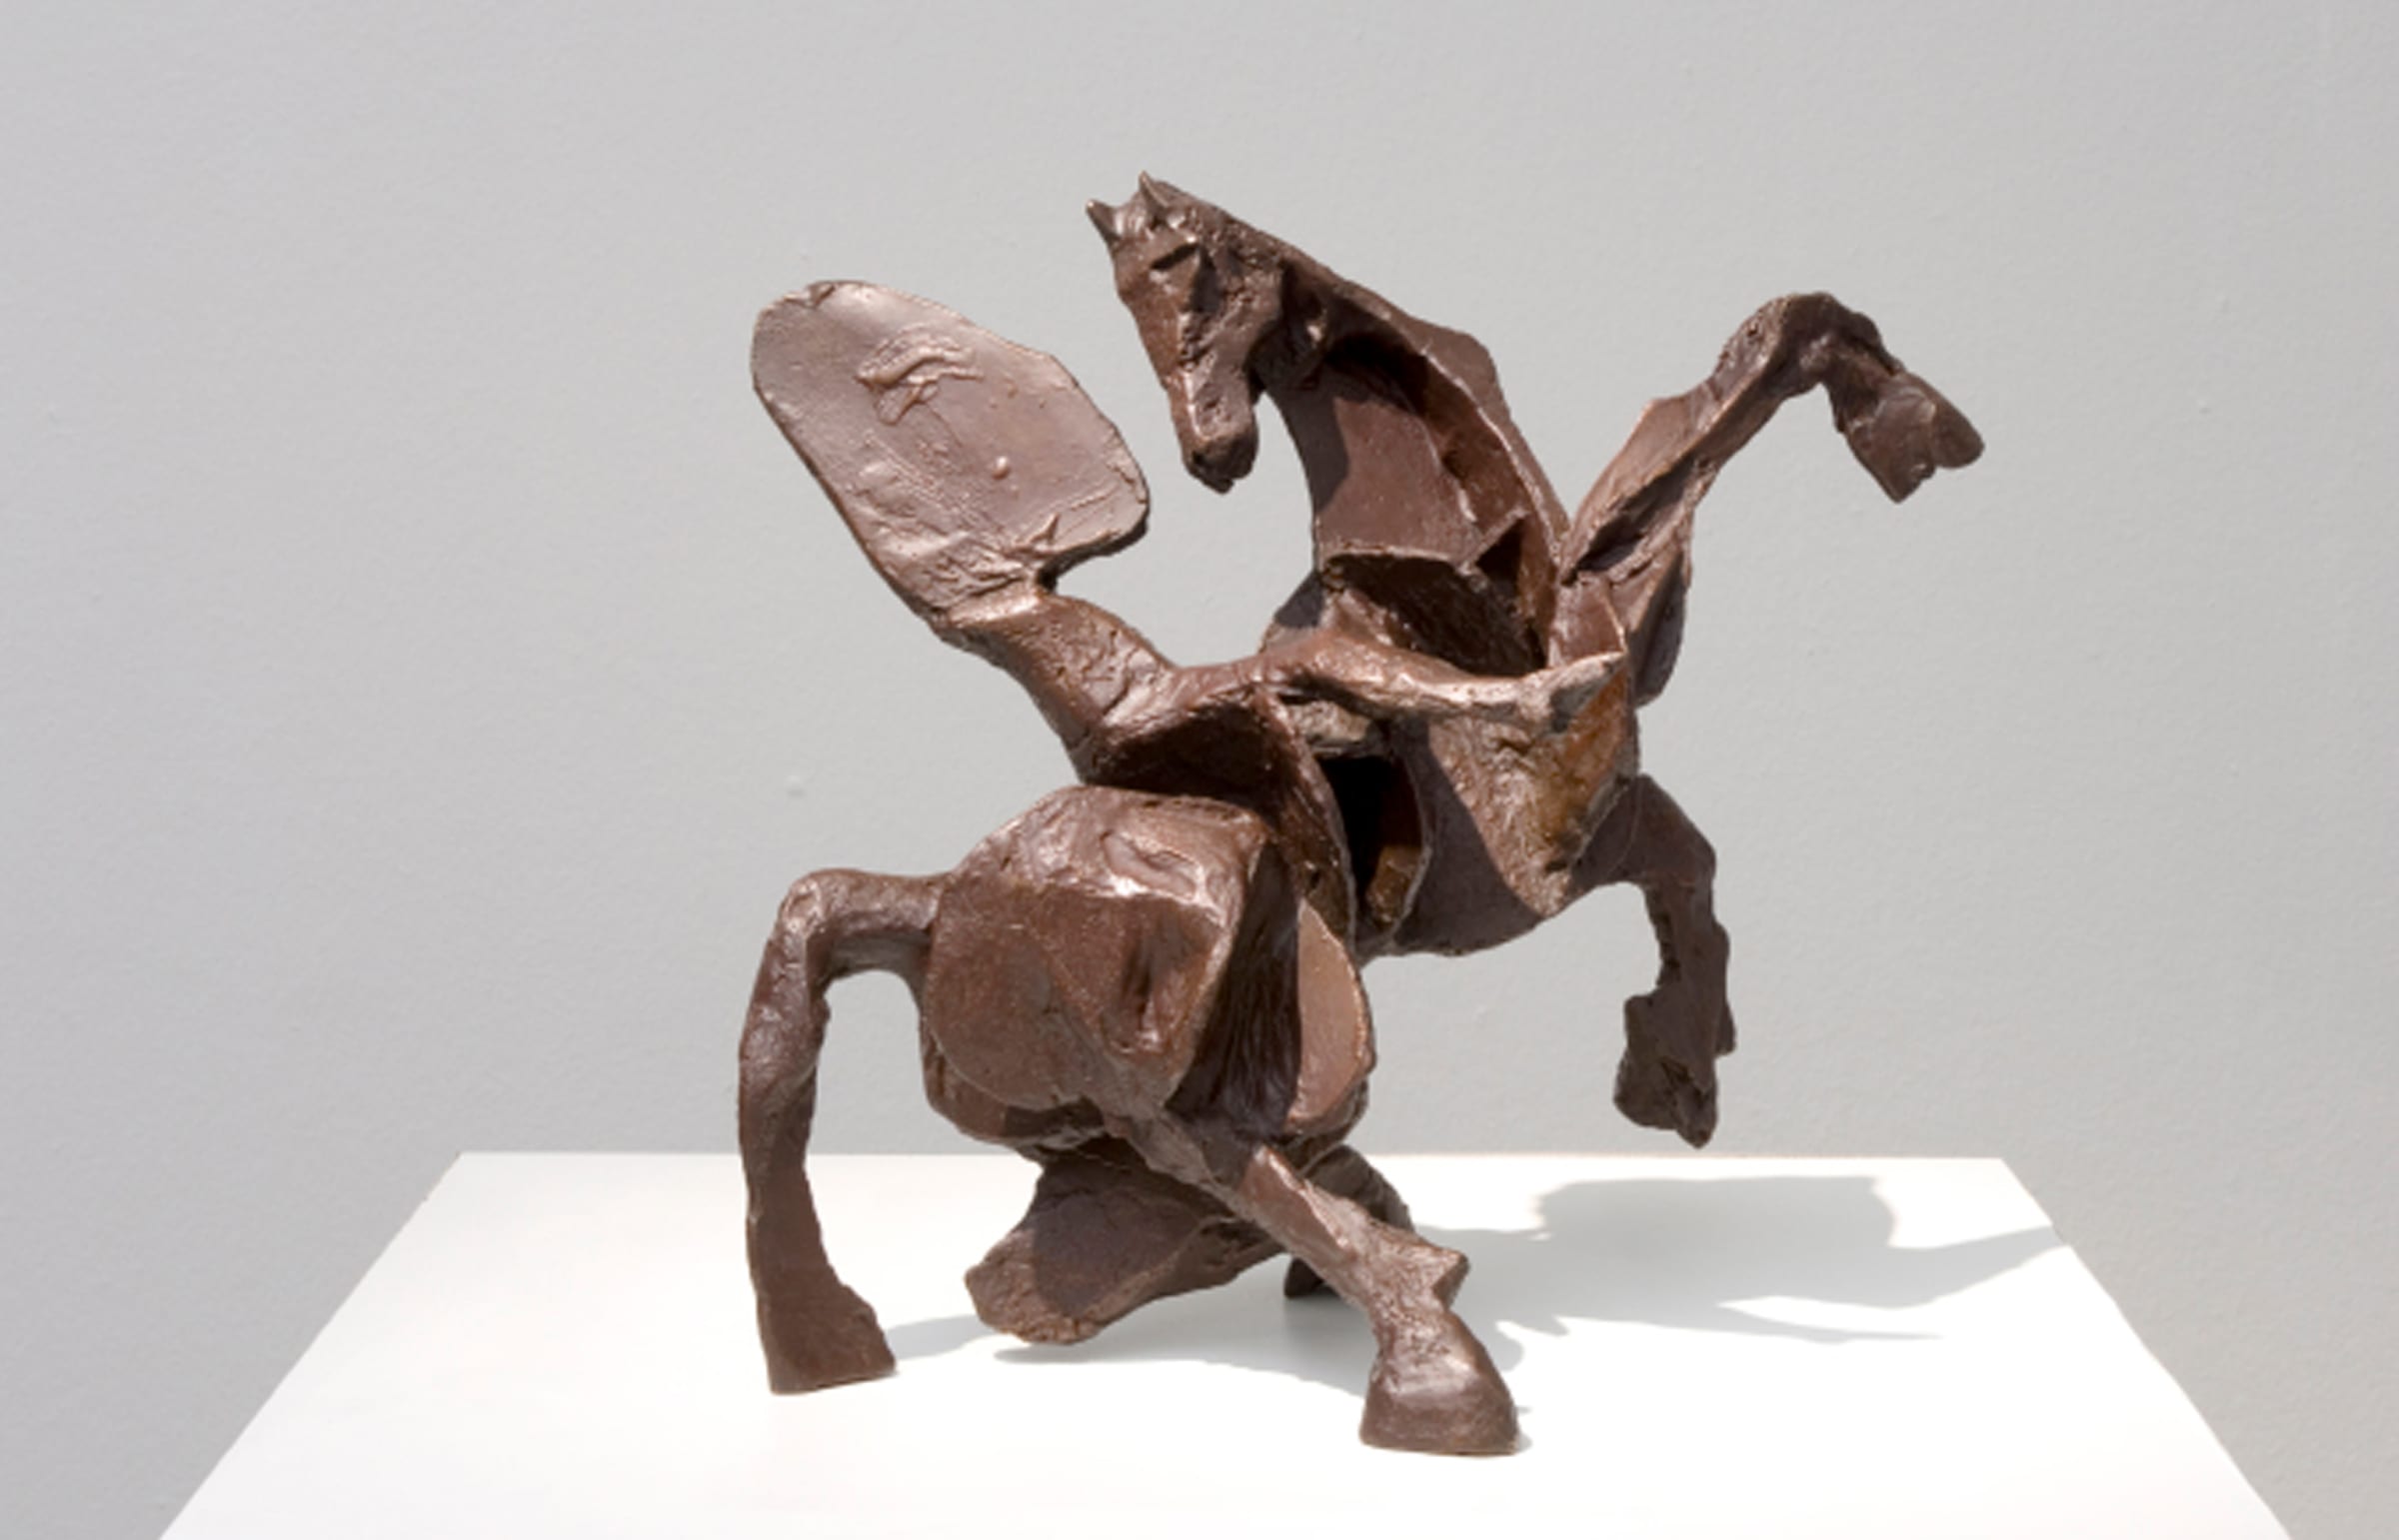 William Kentridge, Untitled I (Nose on rearing horse), 2007